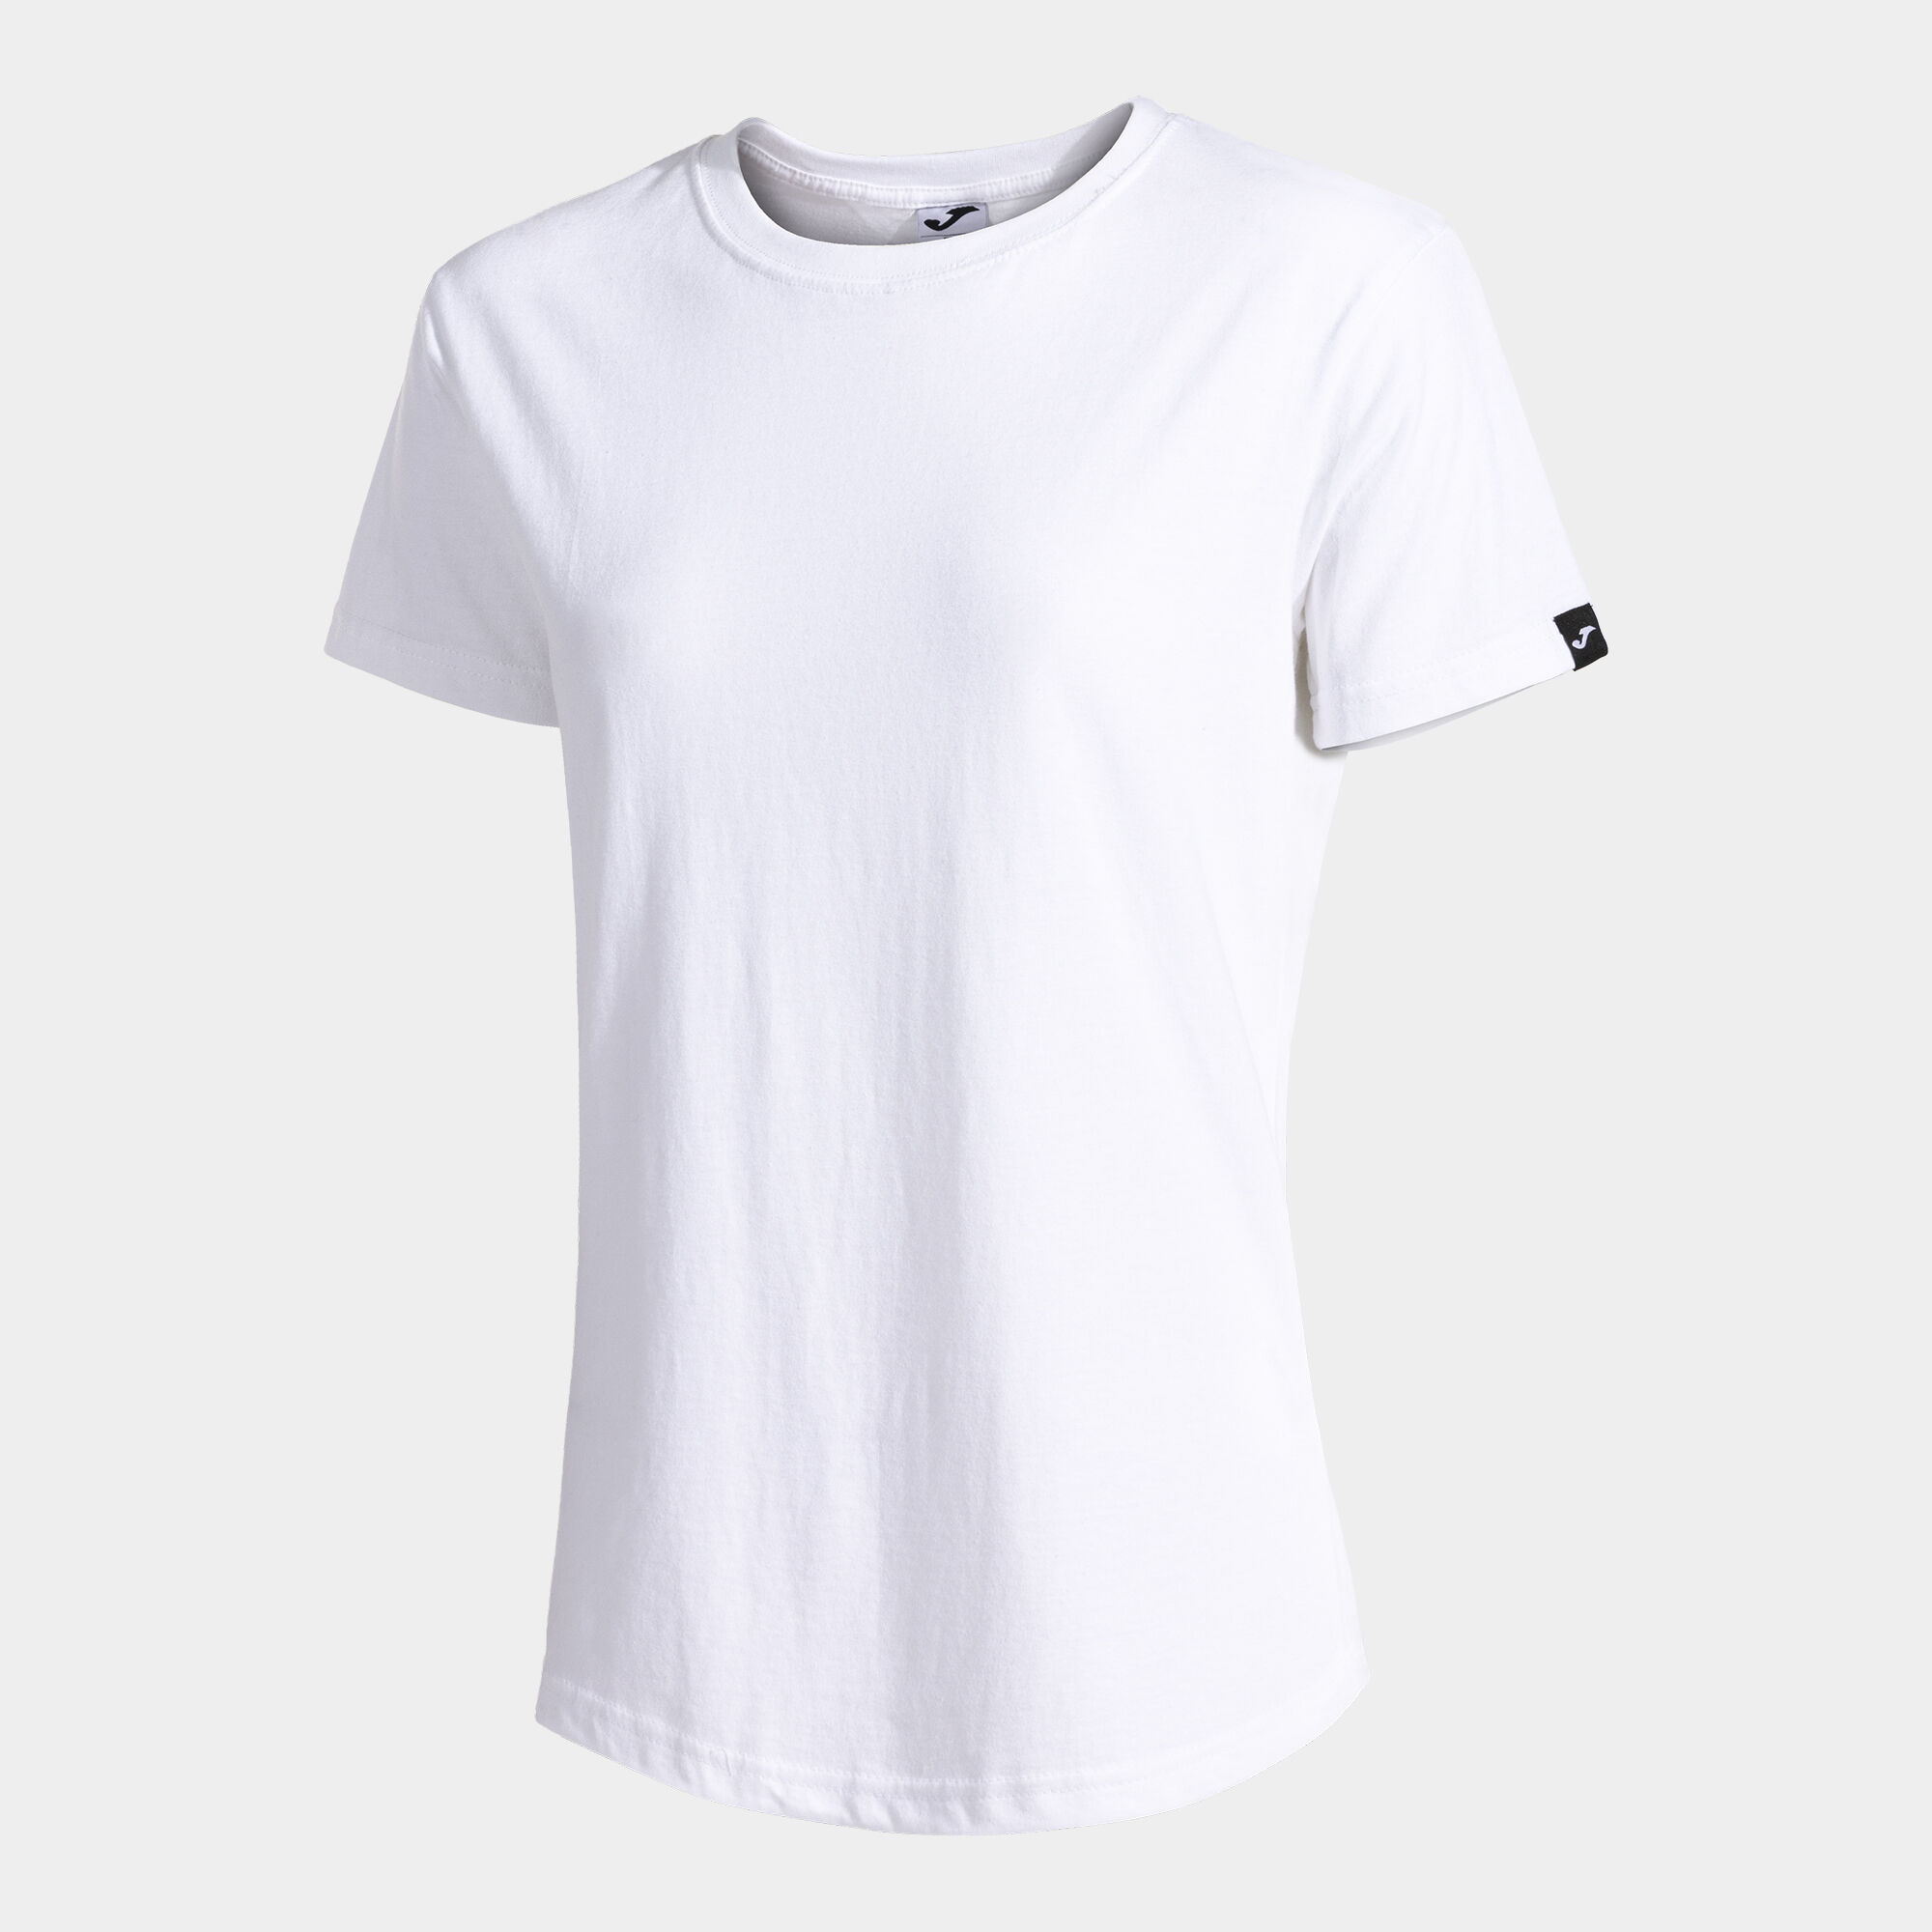 Camiseta manga corta mujer Desert blanco